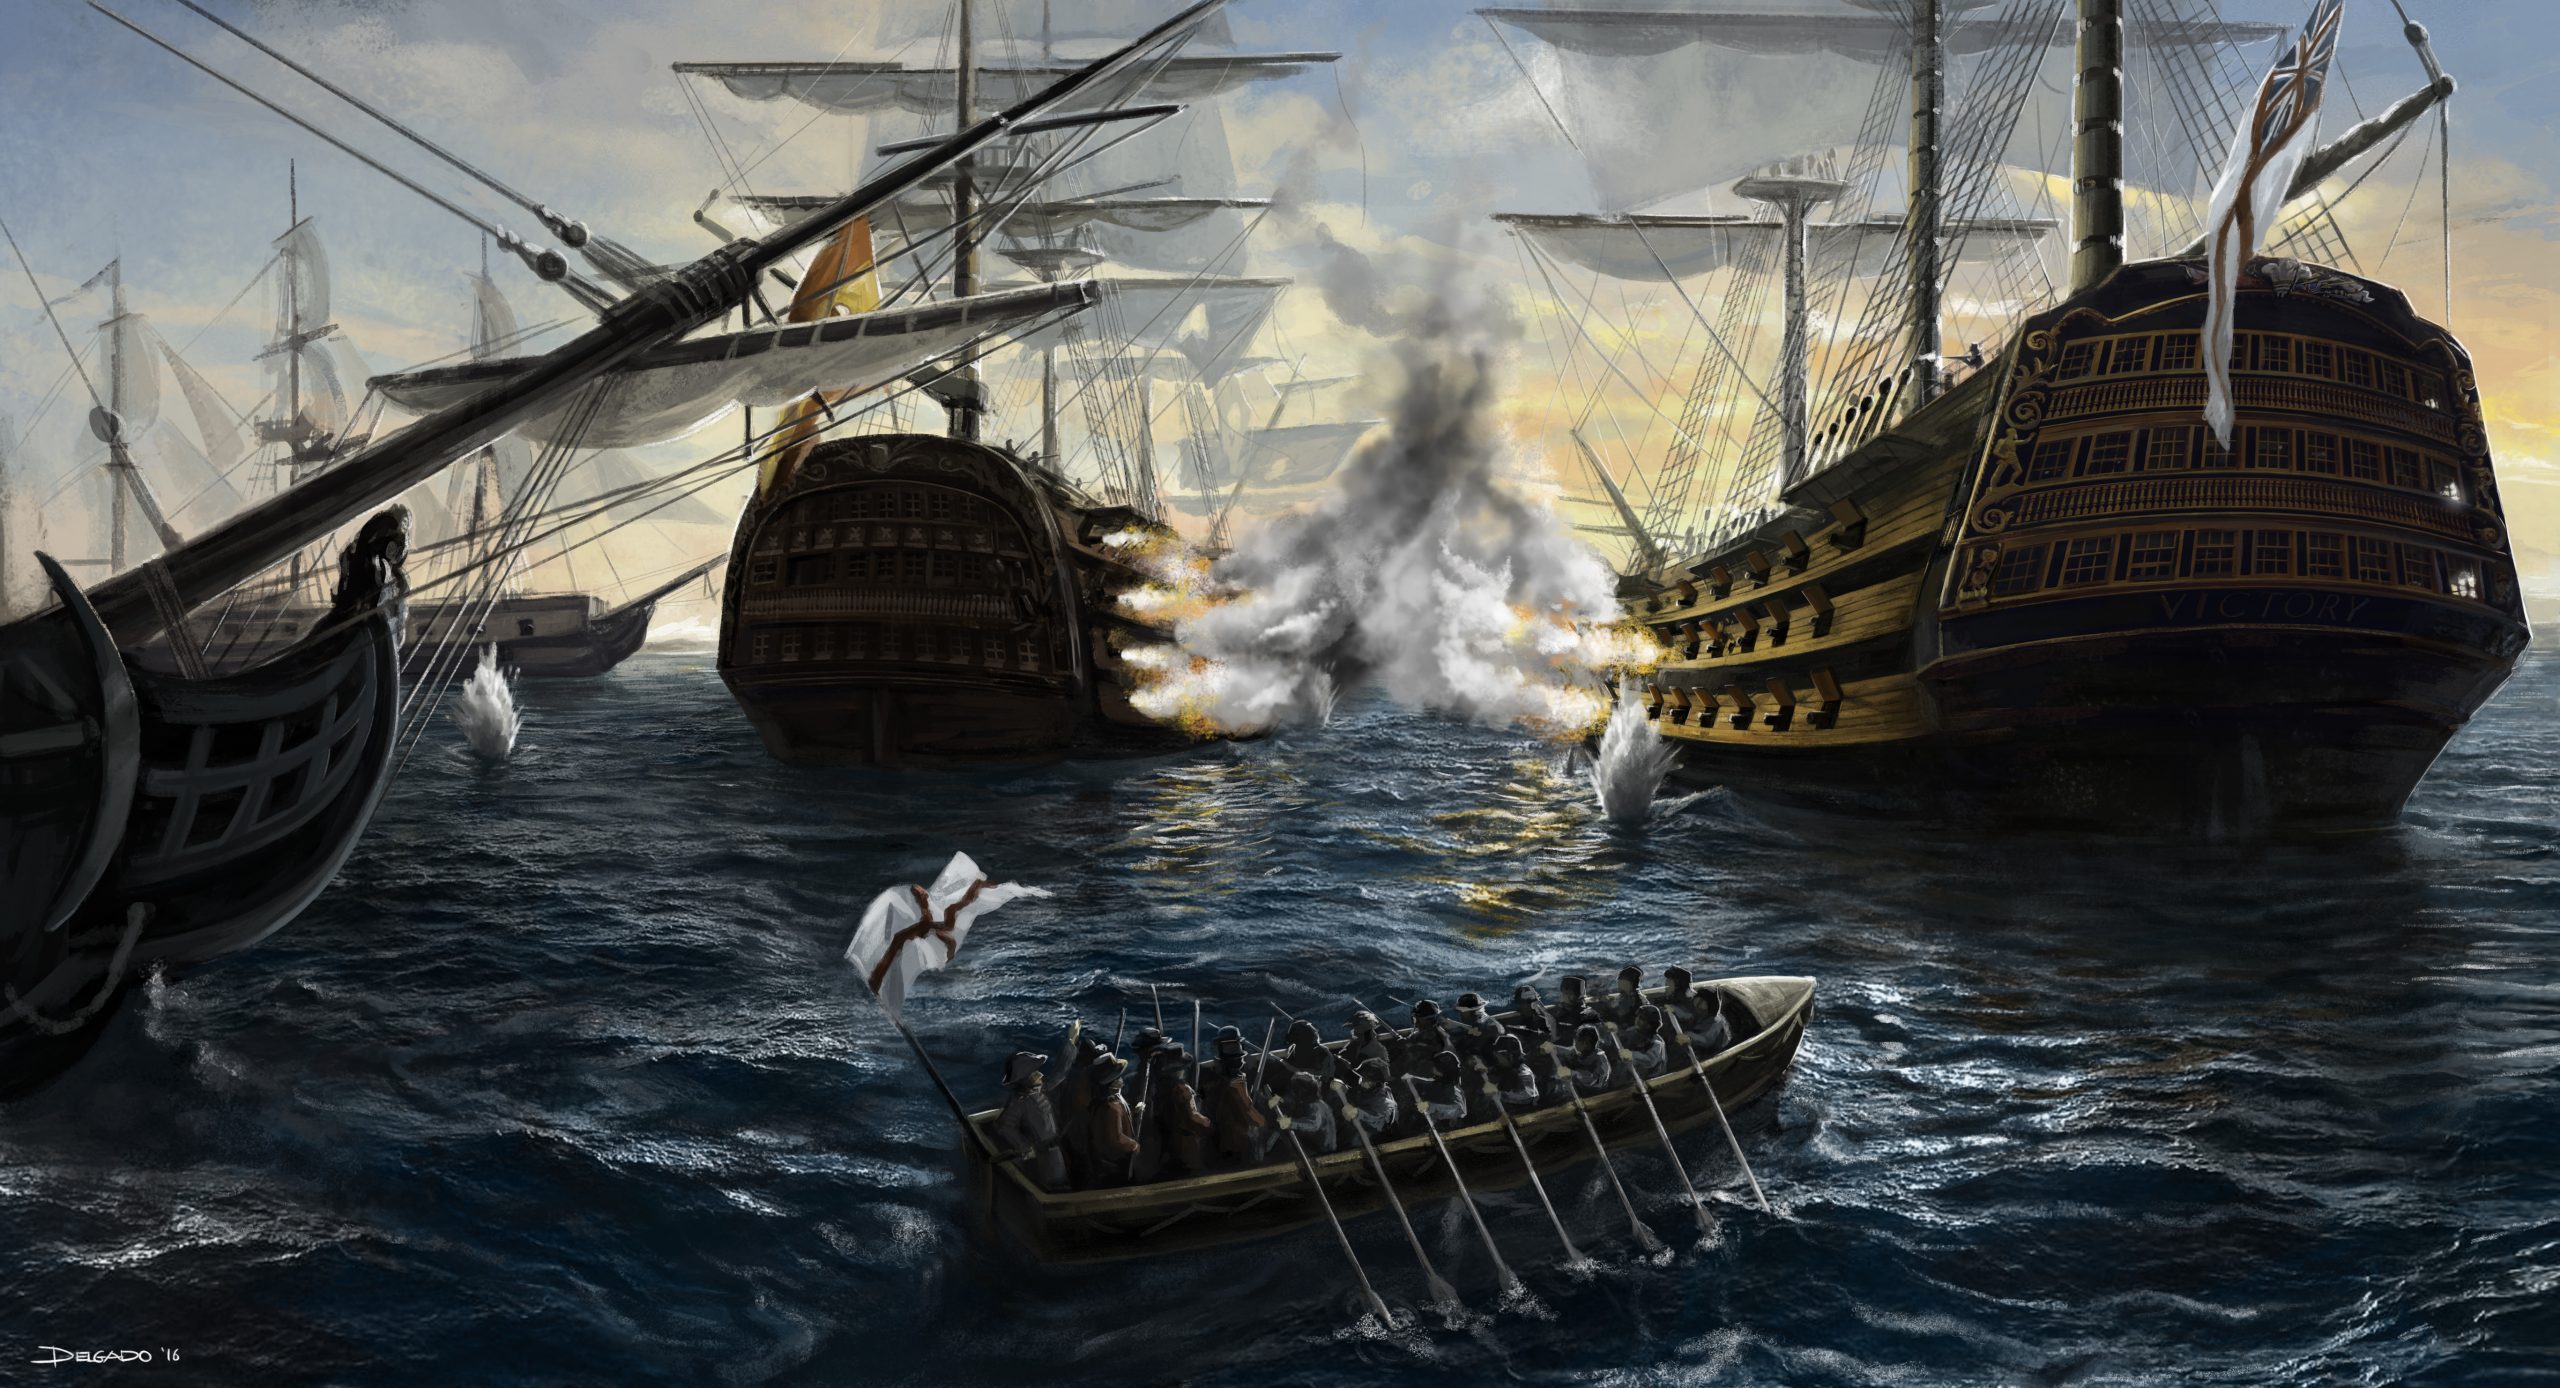 Batalla de Trafalgar